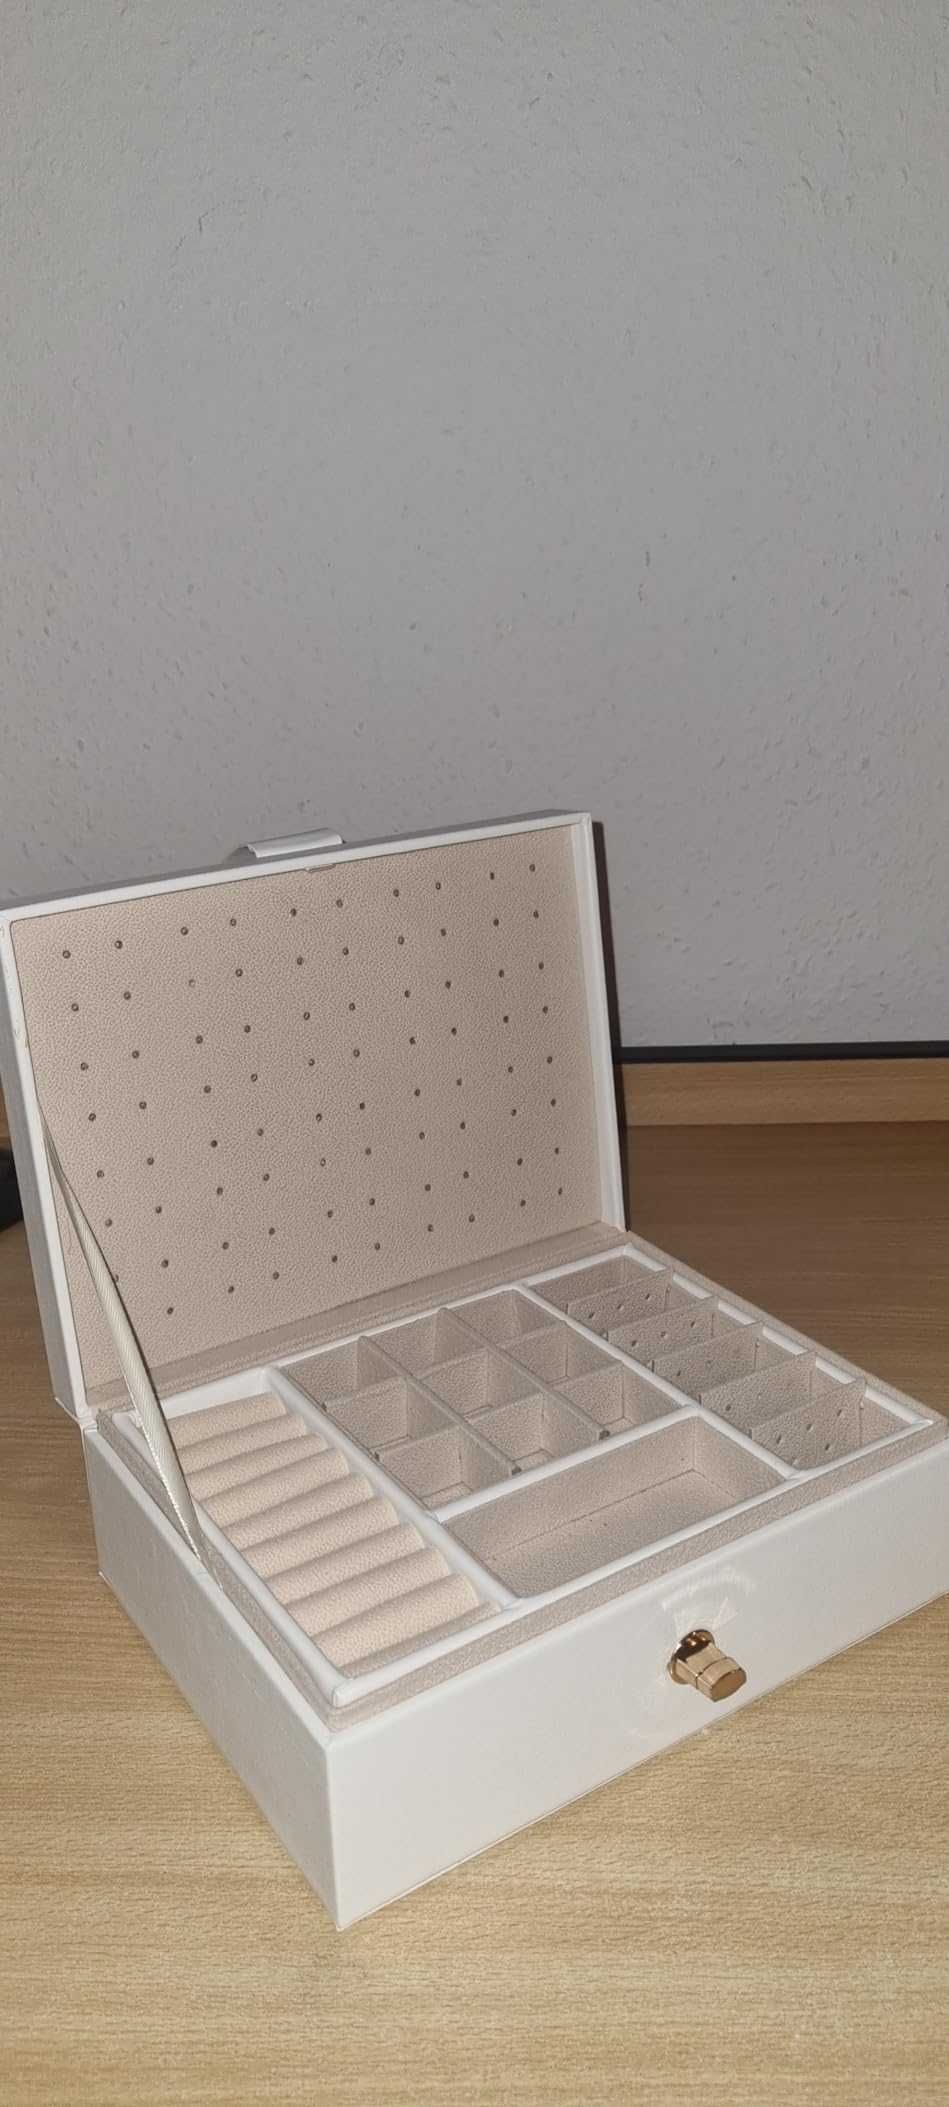 Duża pojemna szkatułka organizer pudełko na biżuterię  PREZENT